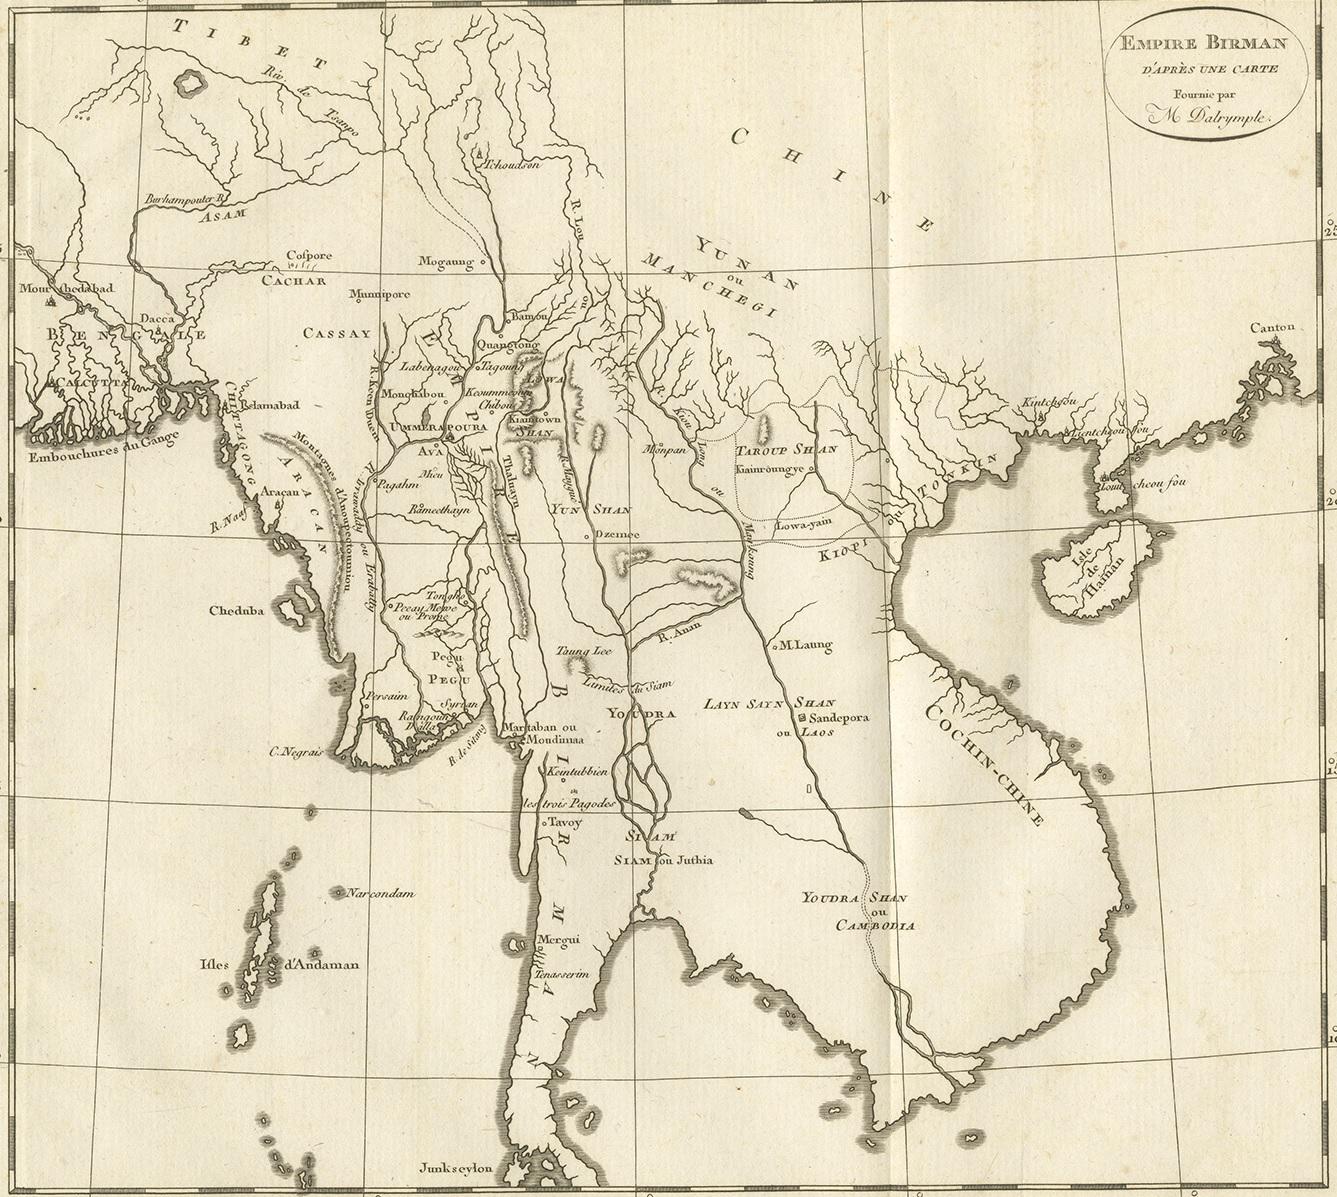 Antique map titled 'Empire Birman d'après une carte'. Map of the Burmese Empire. This map originates from 'Relation de l'Ambassade Anglaise, envoyée en 1795 dans le Royaume d'Ava, ou l'Empire des Birmans' by M. Symes. Published 1800.